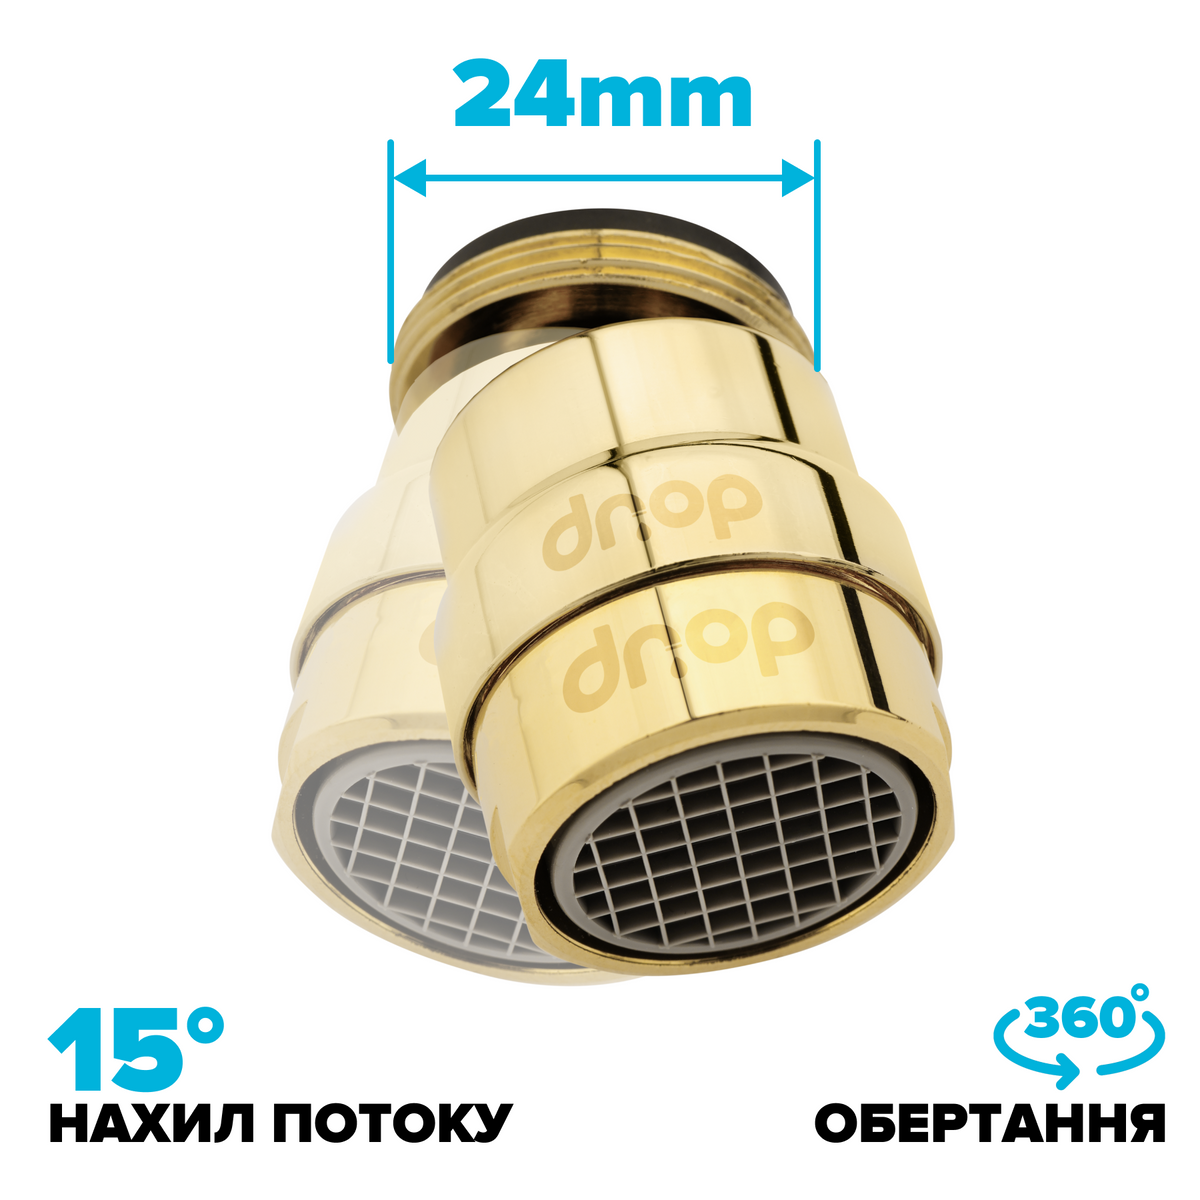 Поворотный 360° адаптер DROP COLOR CL360-GLD внешняя резьба 24 мм угол 15° латунь цвет золотой